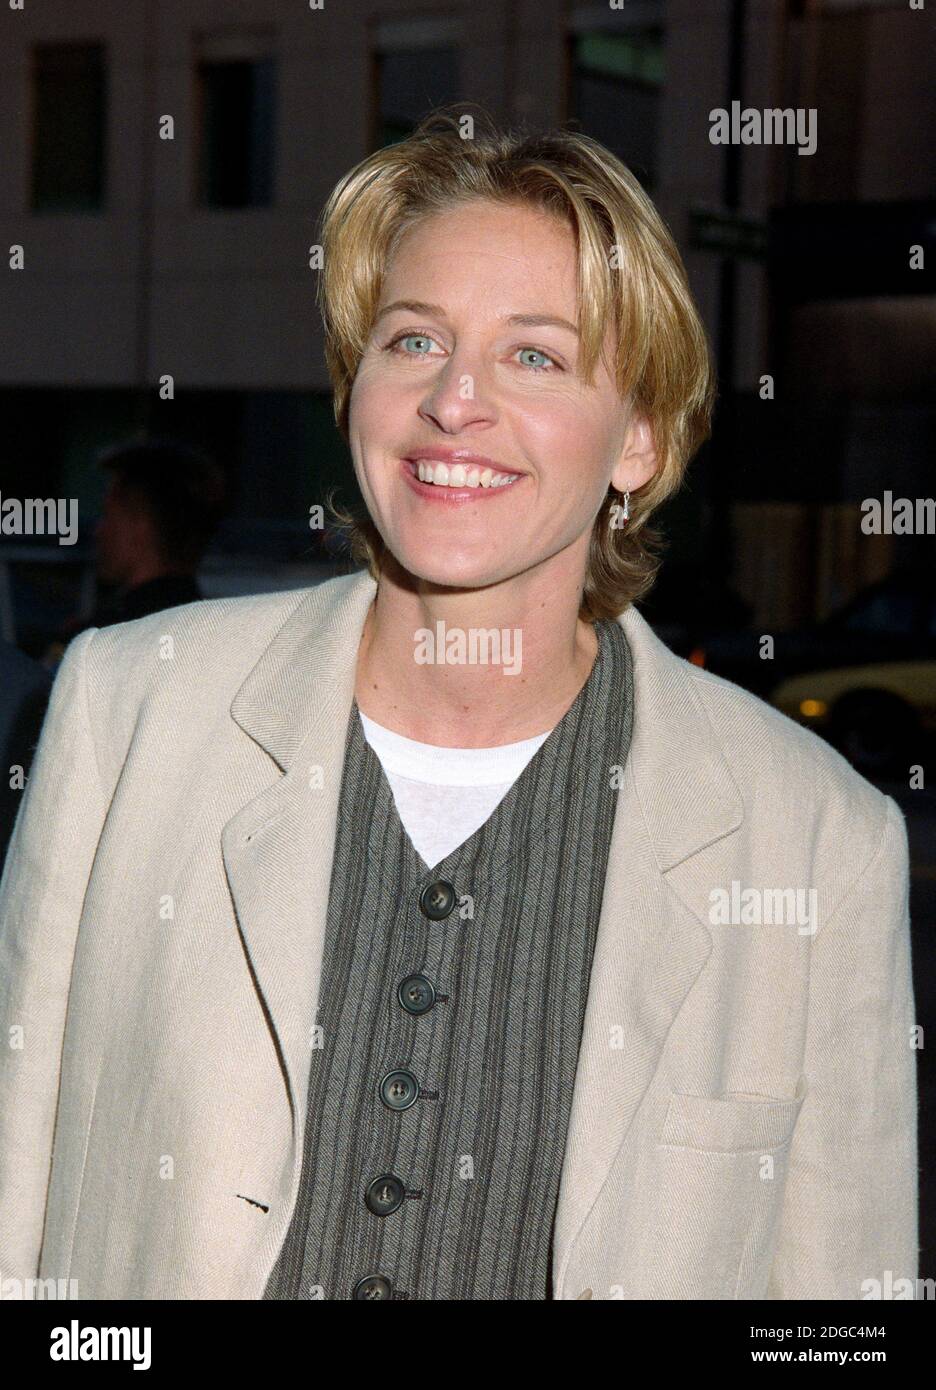 ARCHIVO: LOS ANGELES, CA. 28 de julio de 1994: Actriz/comediante Ellen Degeneres en el estreno de 'The Mask' en los Ángeles. Archivo foto © Paul Smith/Featurreflash Foto de stock